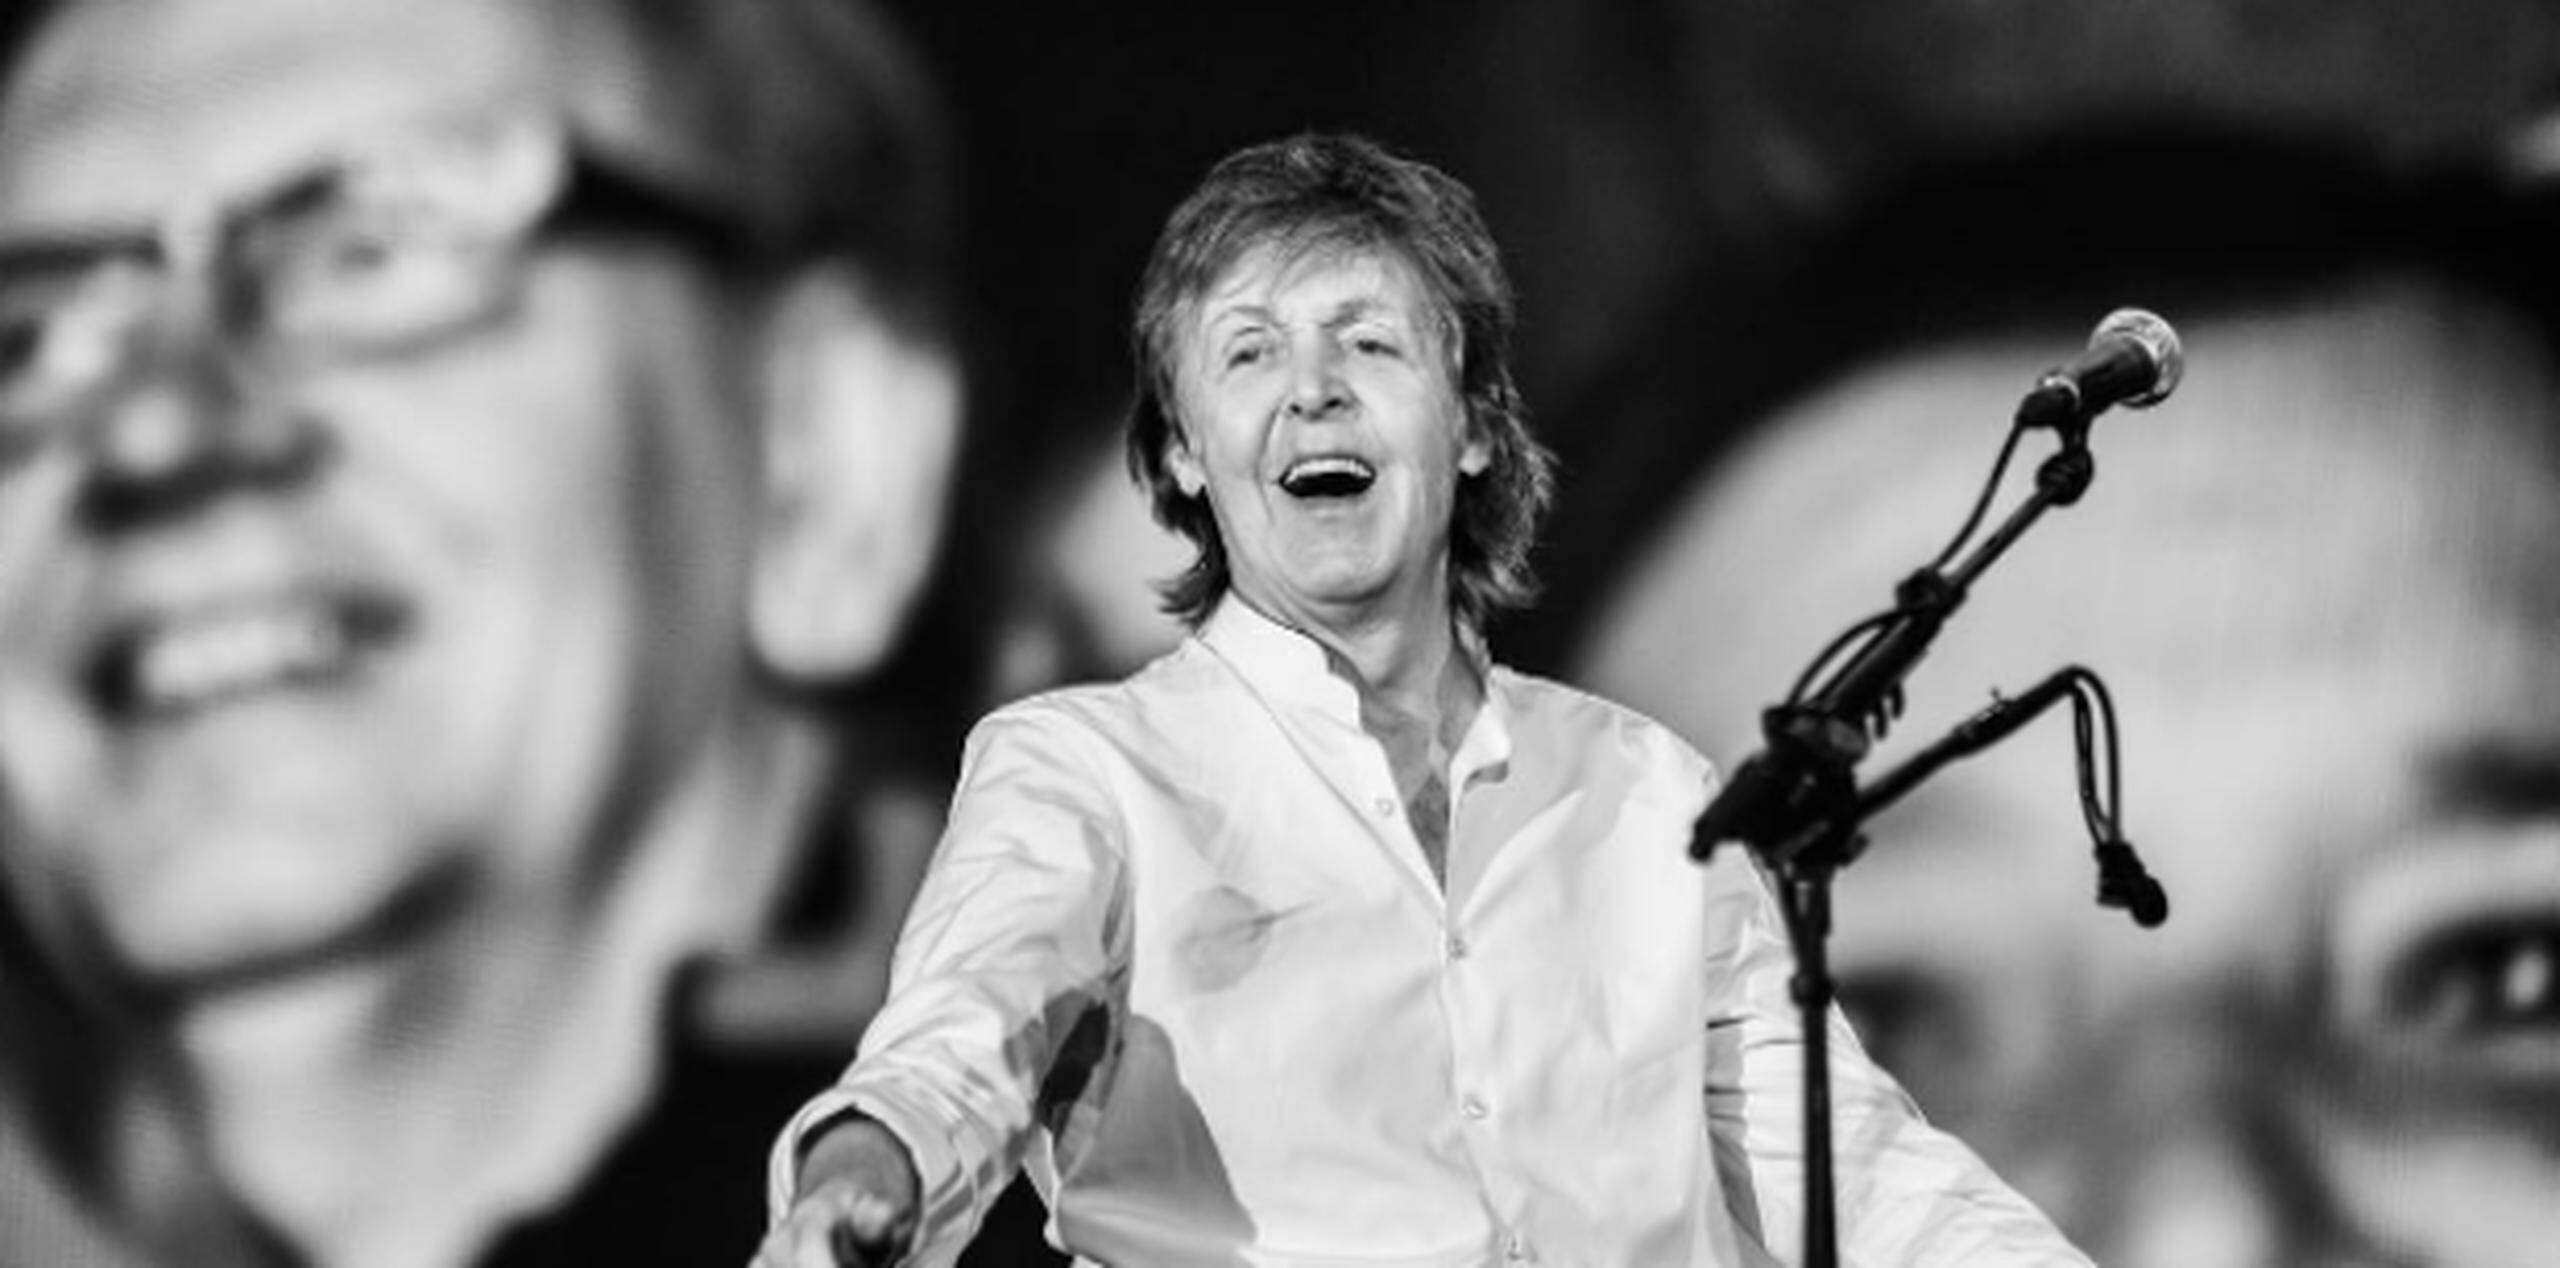 Paul McCartney (Instagram)
